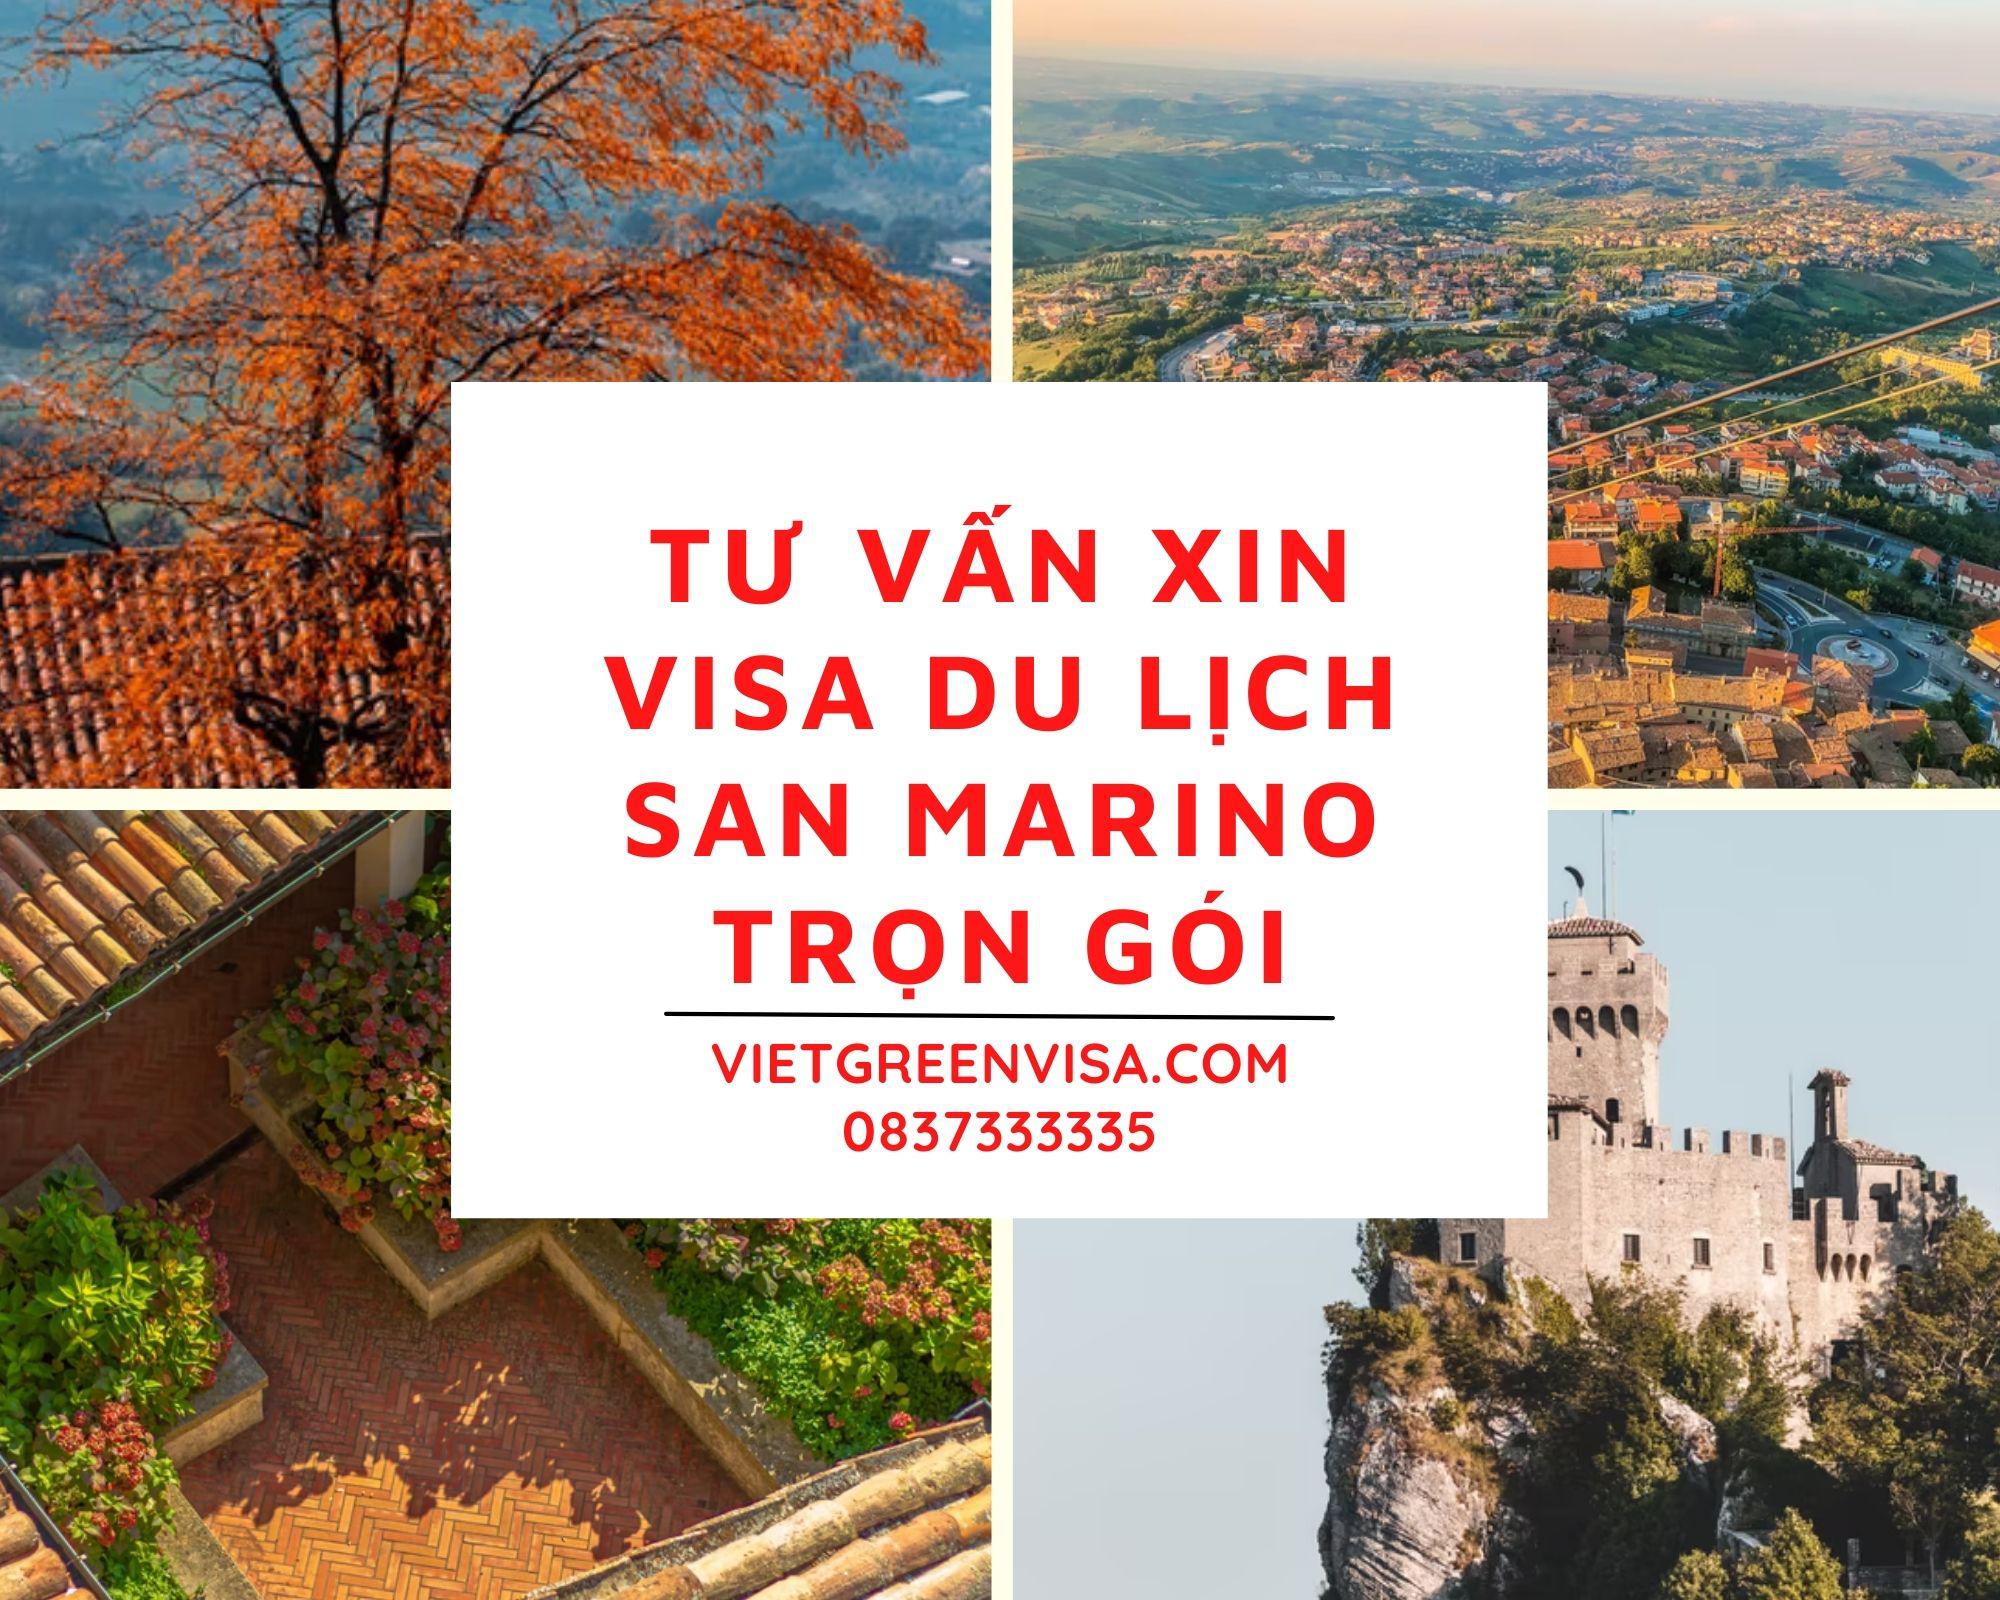 Hỗ trợ xin visa đi du lịch San Marino trọn gói